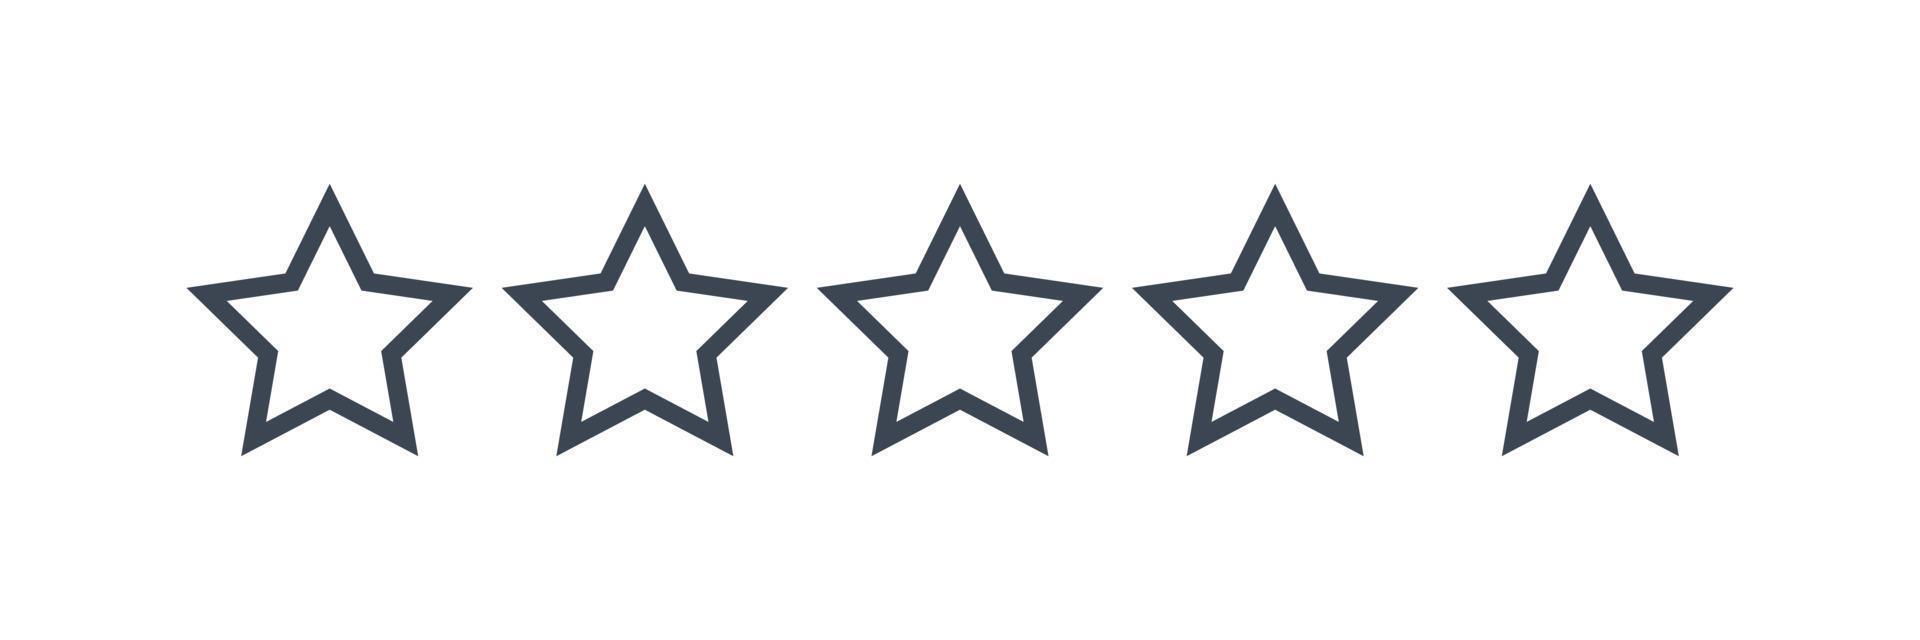 revisión de calificación de producto de cliente de cinco estrellas vector